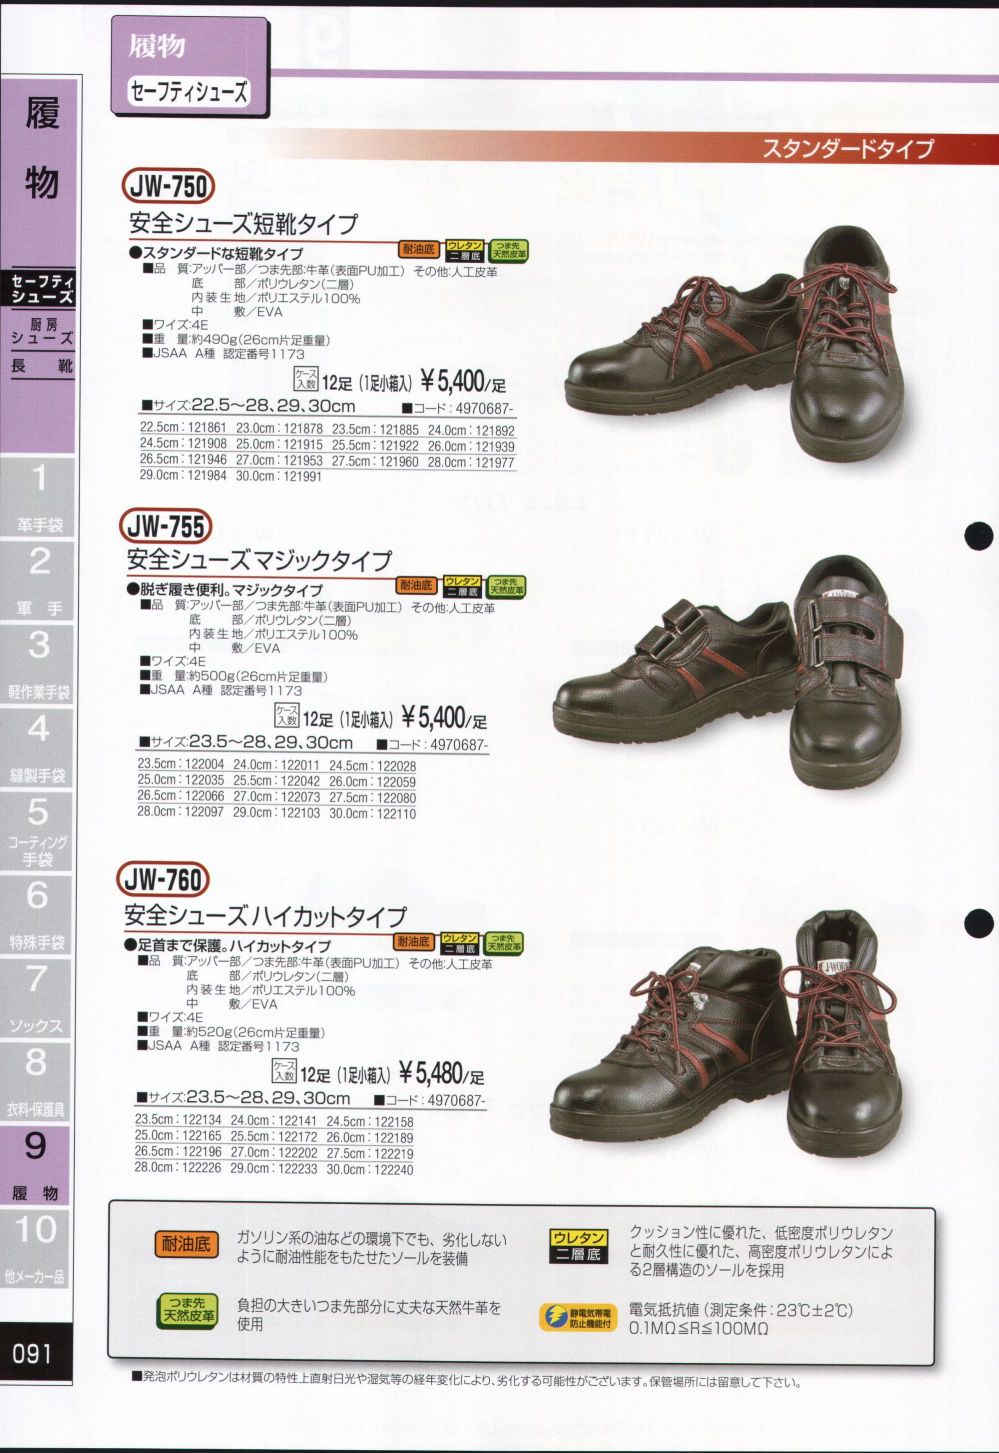 ノサックス 高所用安全靴“安芸たび” 24.5cm AT207-24.5(7713002